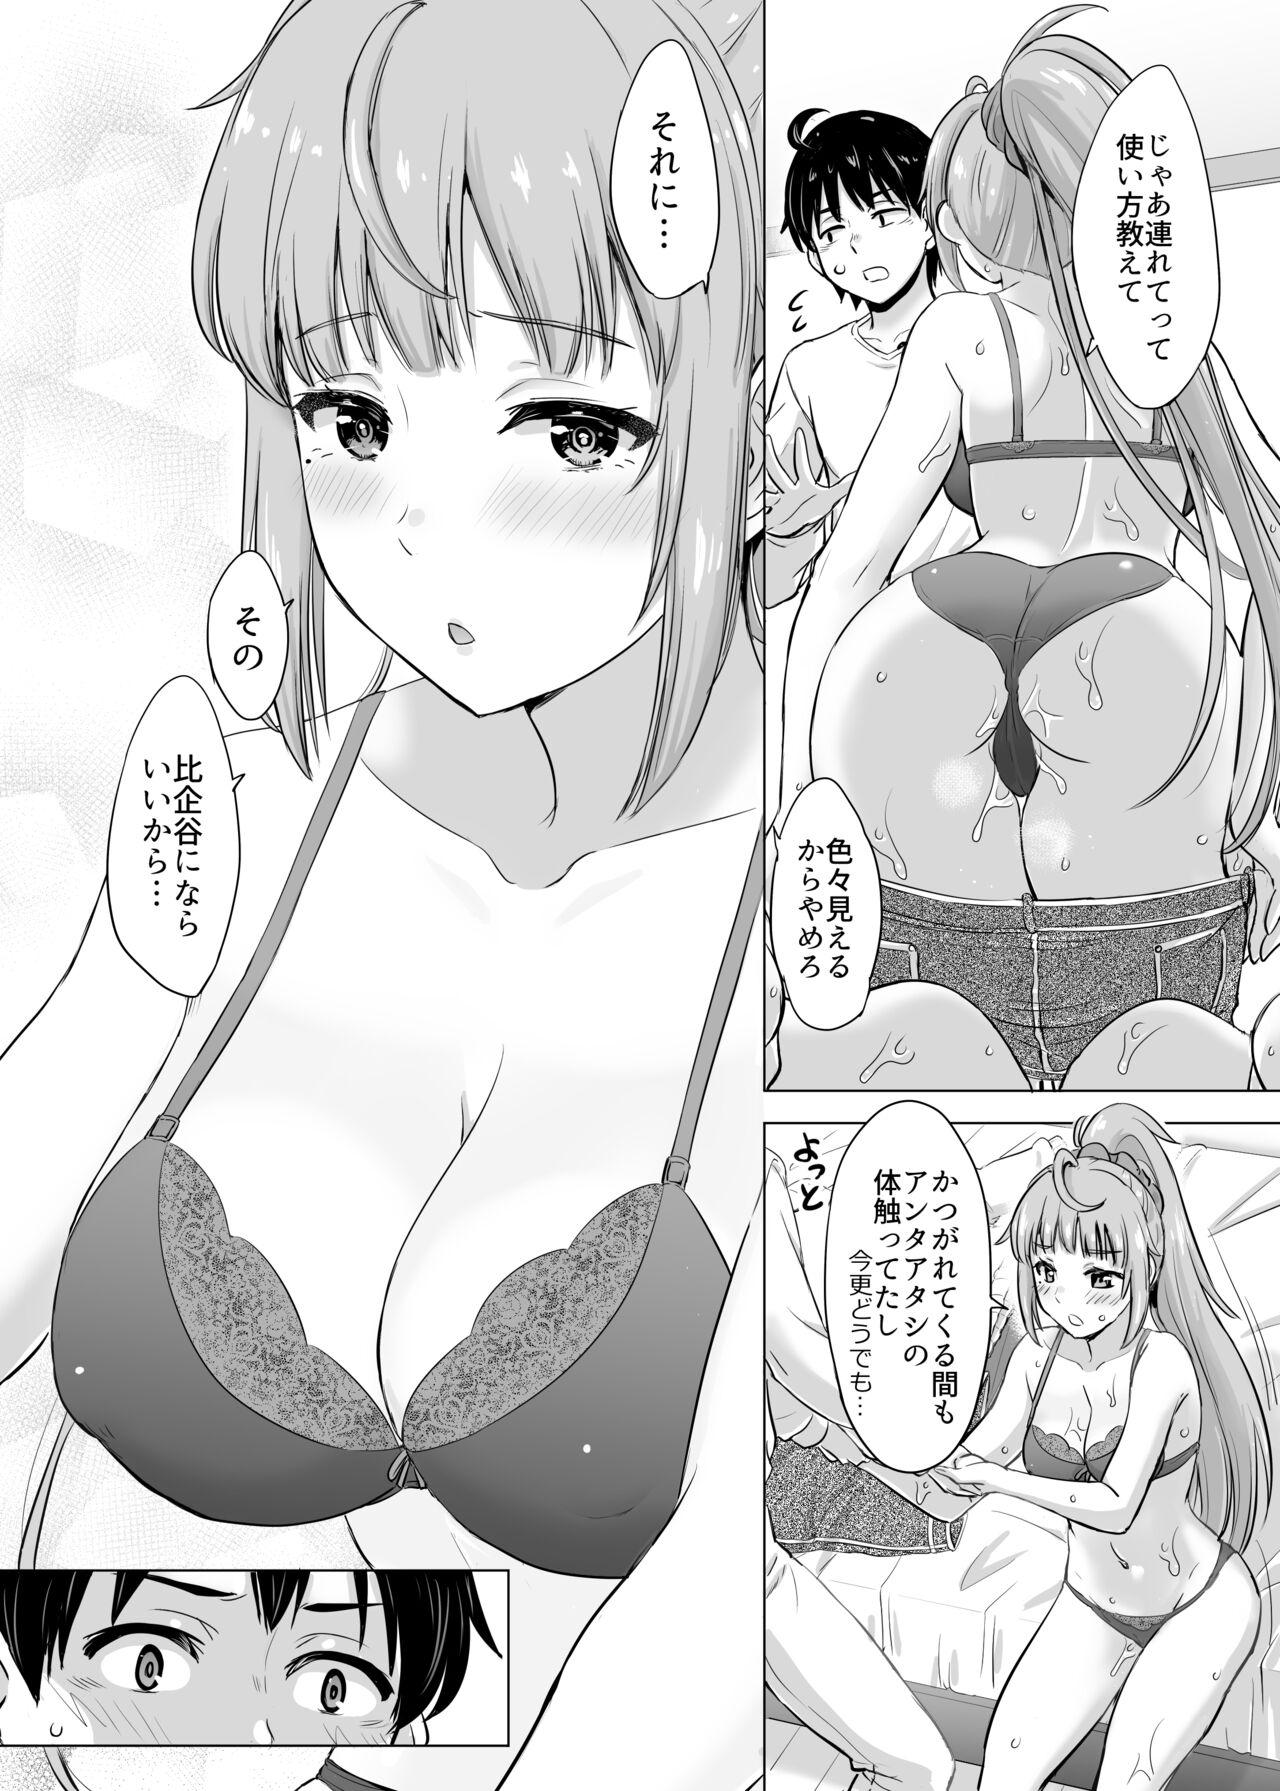 Madura あーしさんサキサキ漫画 - Yahari ore no seishun love come wa machigatteiru Free Blow Job Porn - Page 5